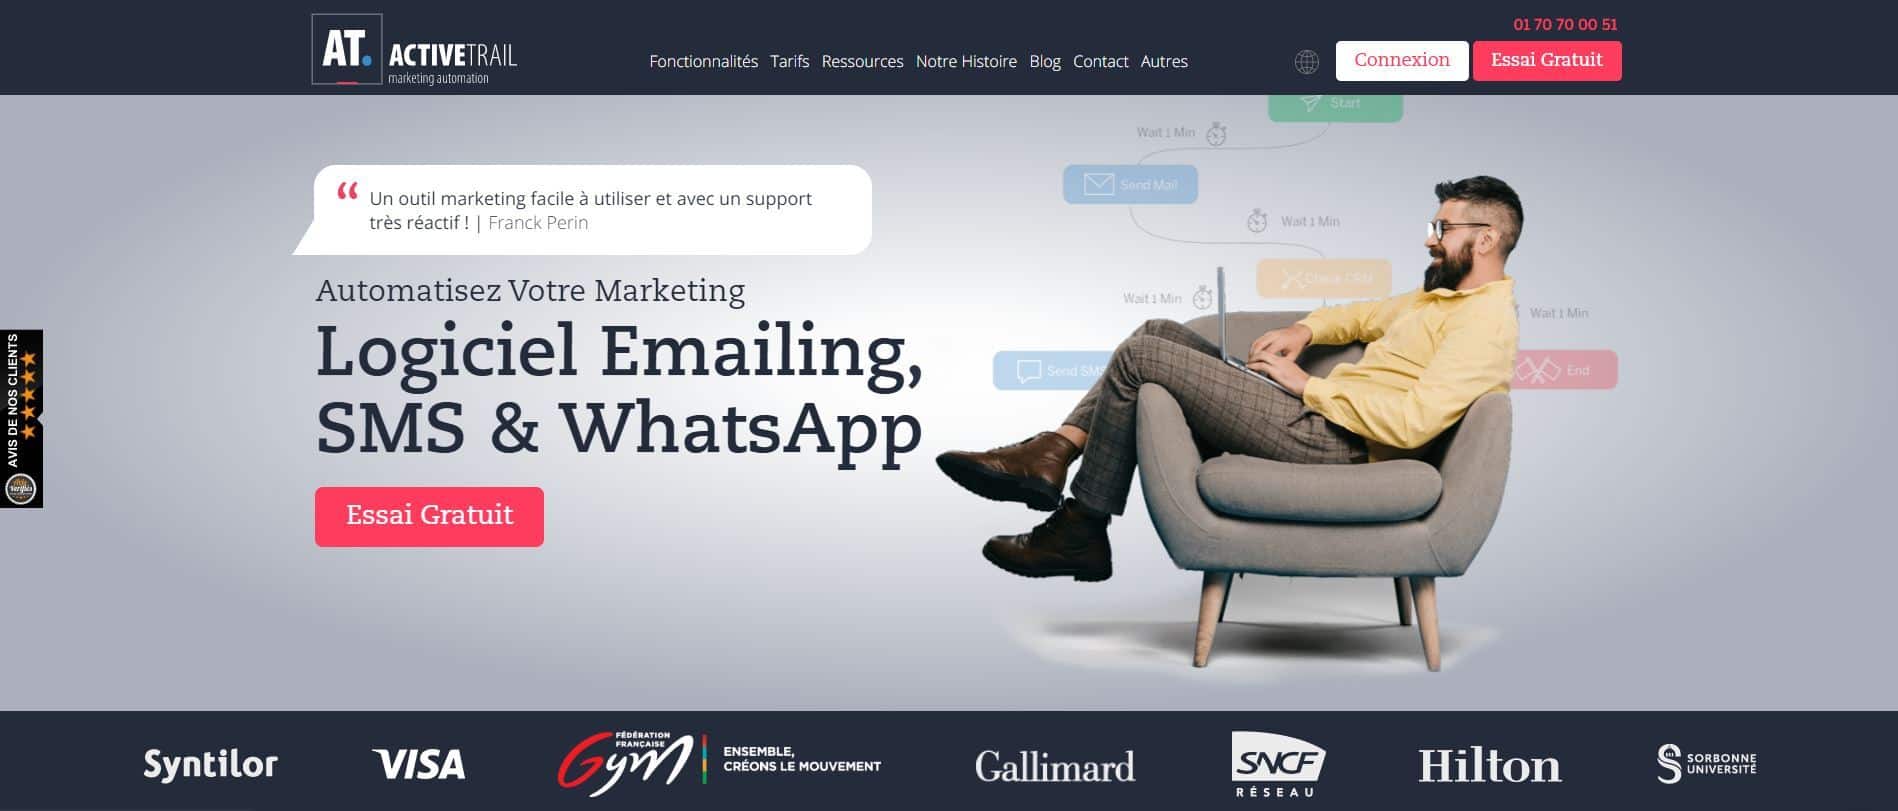 ActiveTrail logiciel emailing SMS et WhatsApp